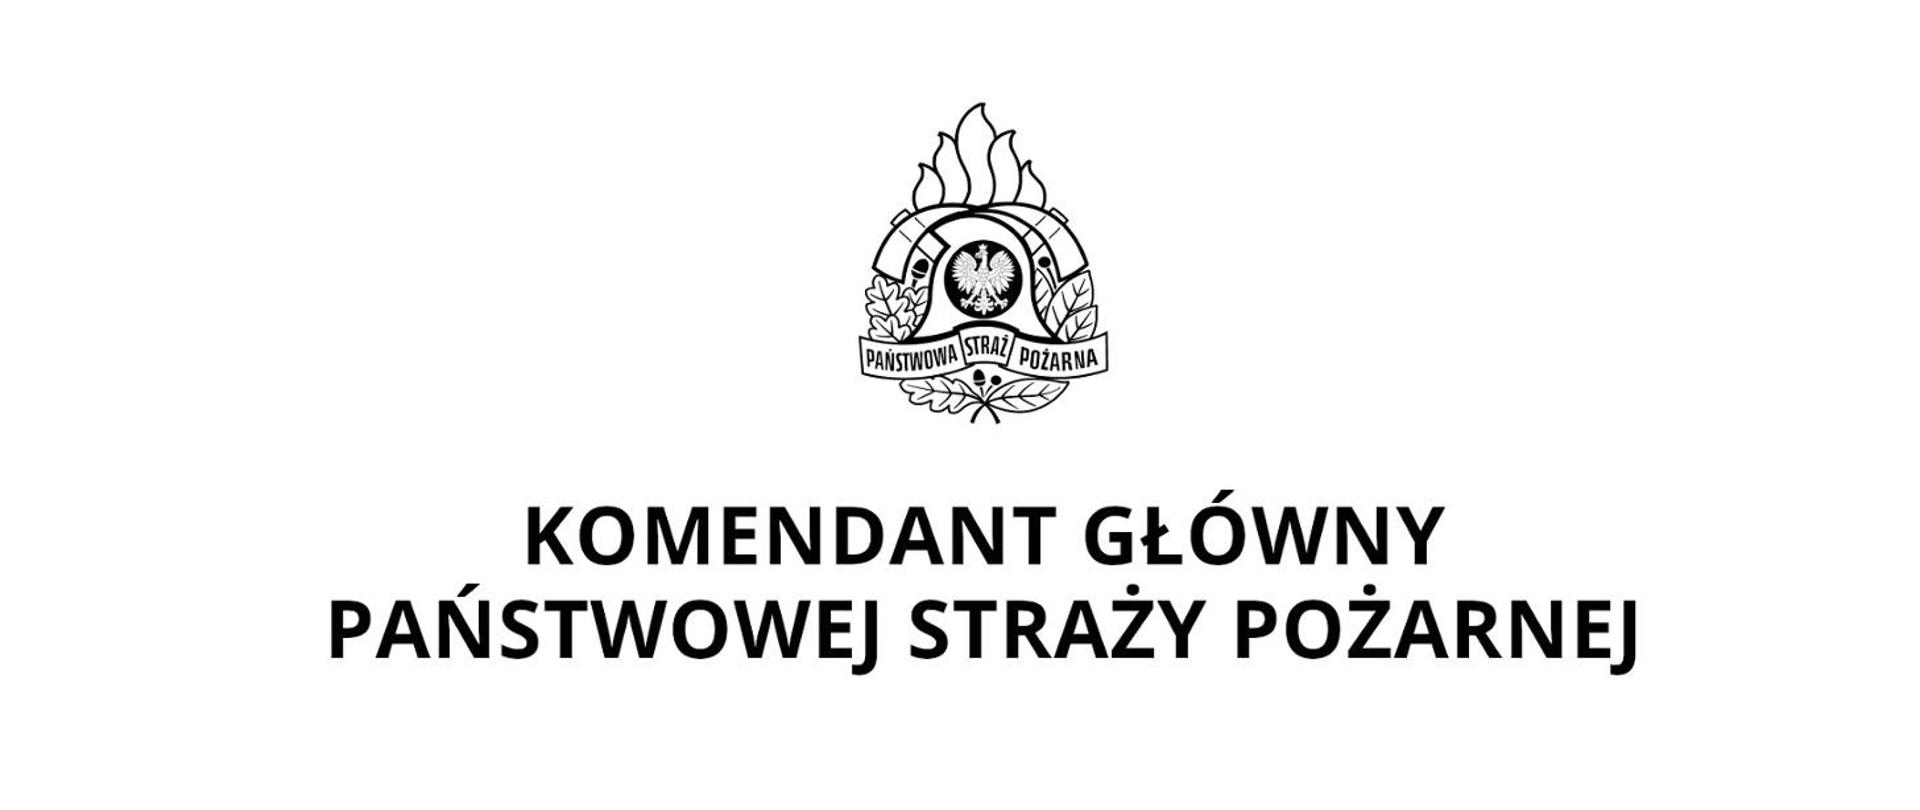 Zdjęcie przedstawia logo Komendanta Głównego PSP